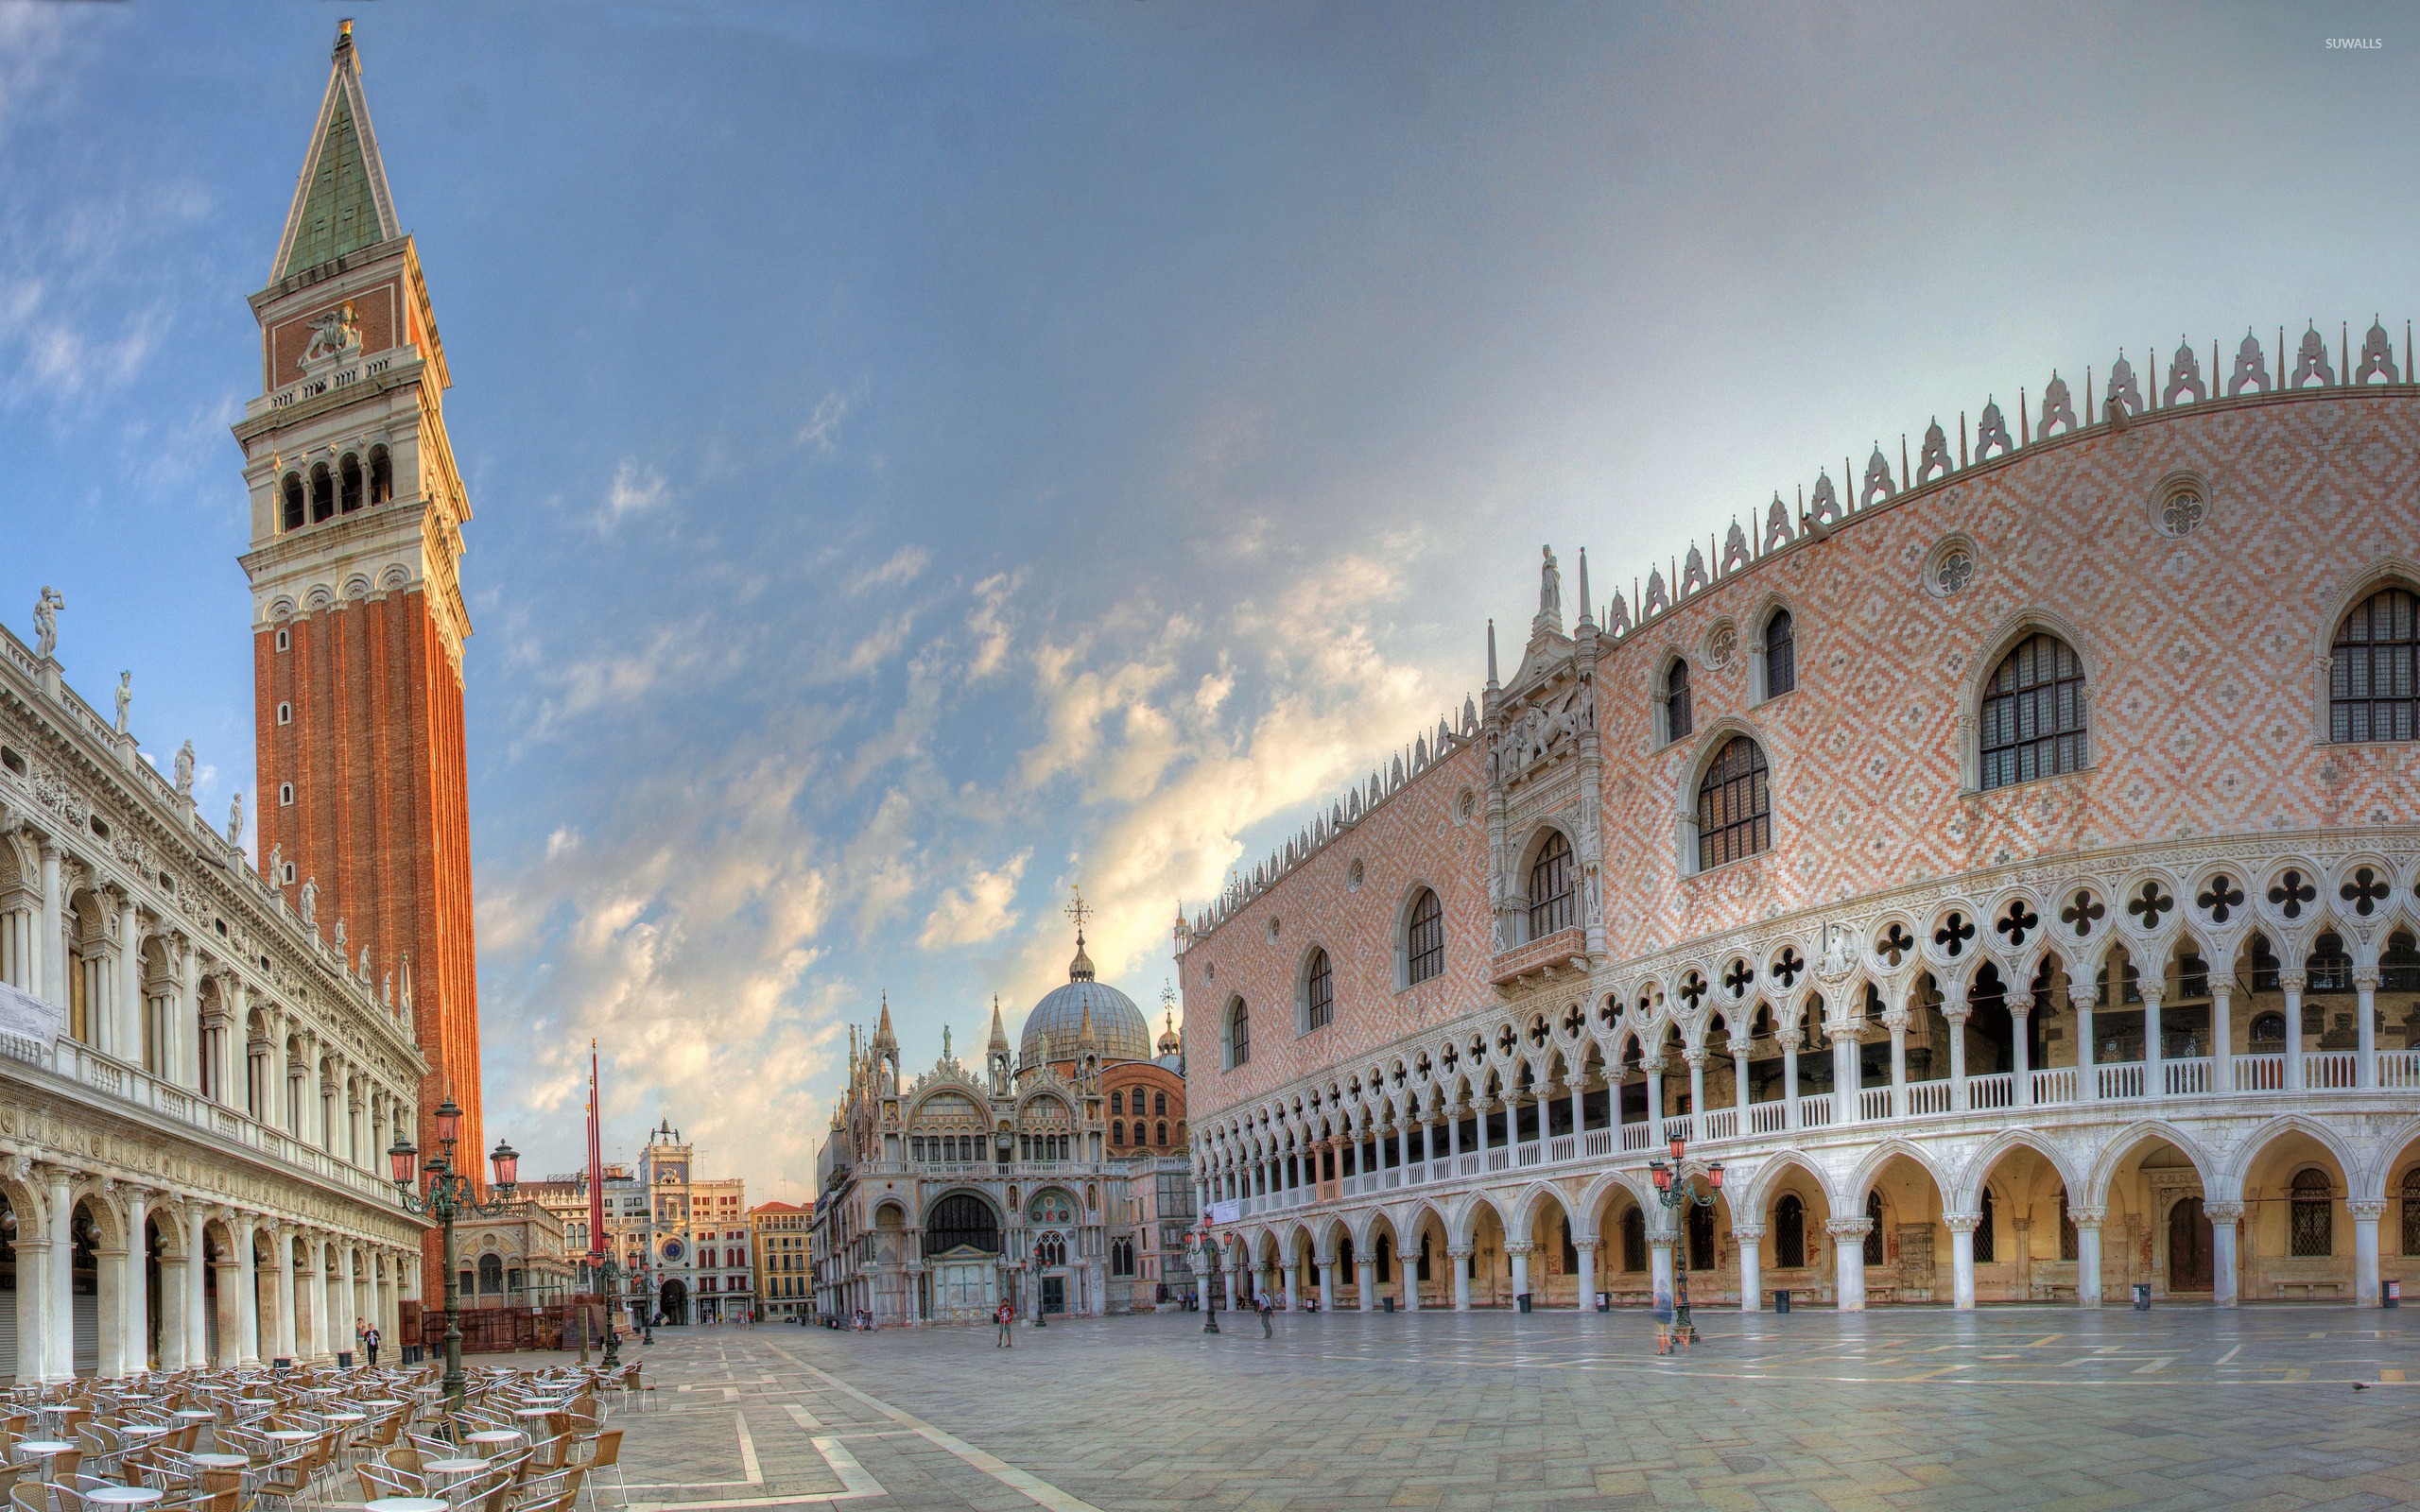 Piazza San Marco Venice, Tempat Menikmati Indahnya Alun-Alun Bersama Ratusan Merpati